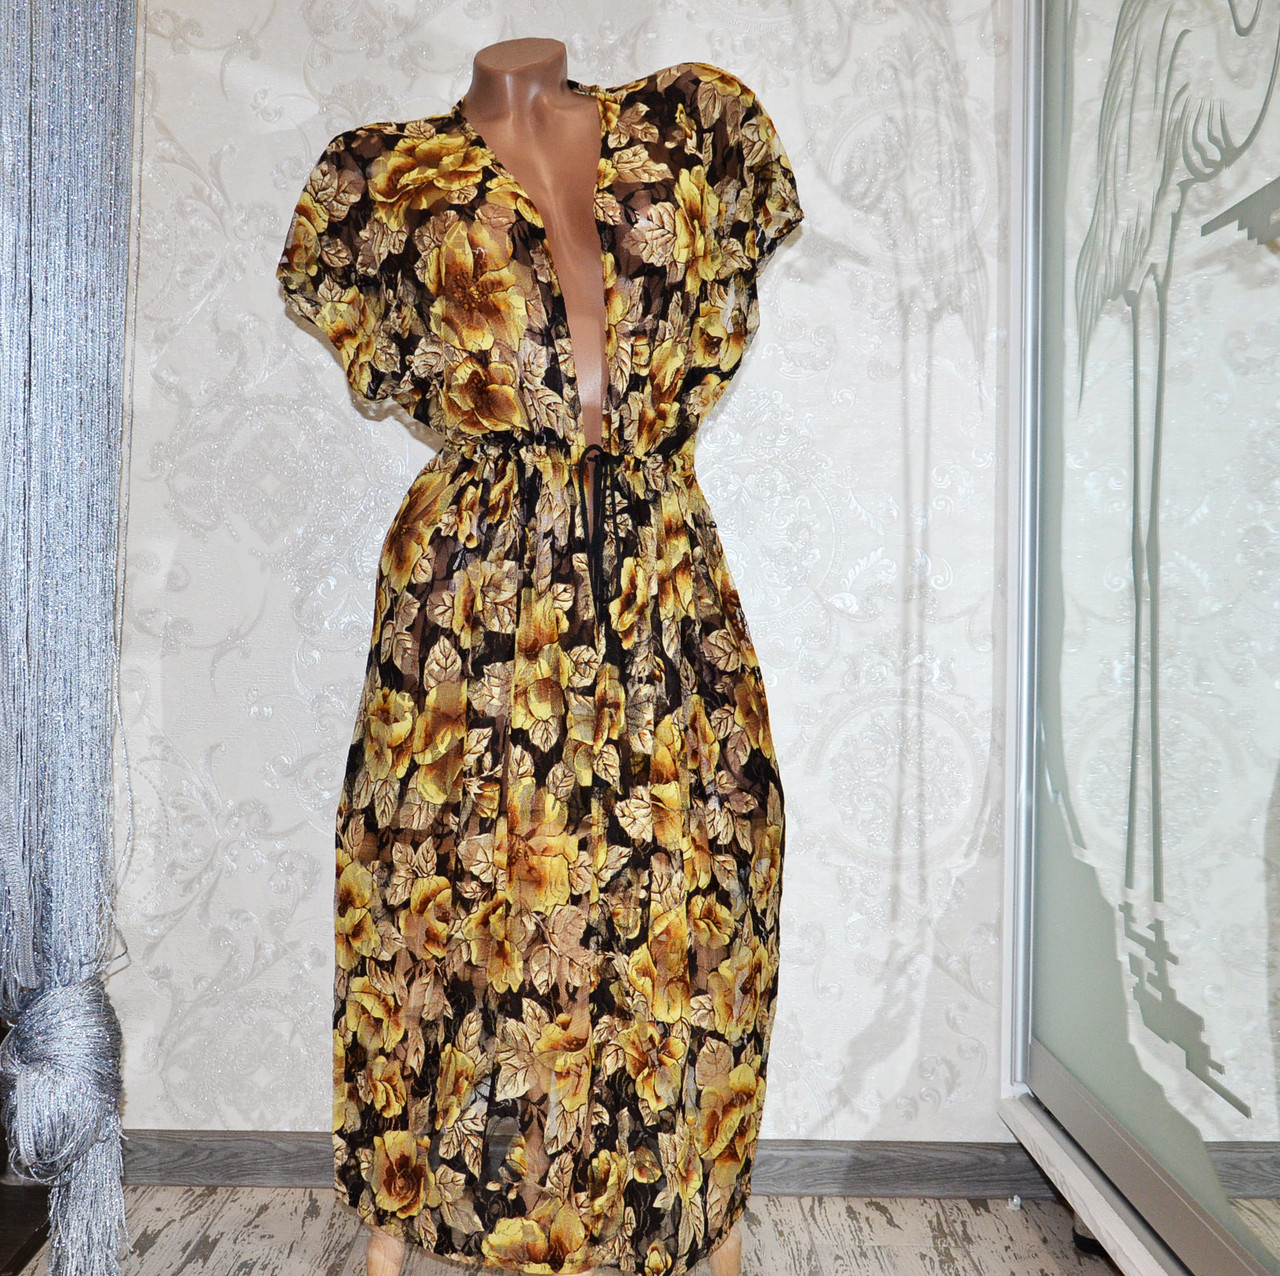 Великий розмір 50-52. Пляжний жіночий довгий гіпюровий халат, чорний із жовтими квітами, накидка в підлогу